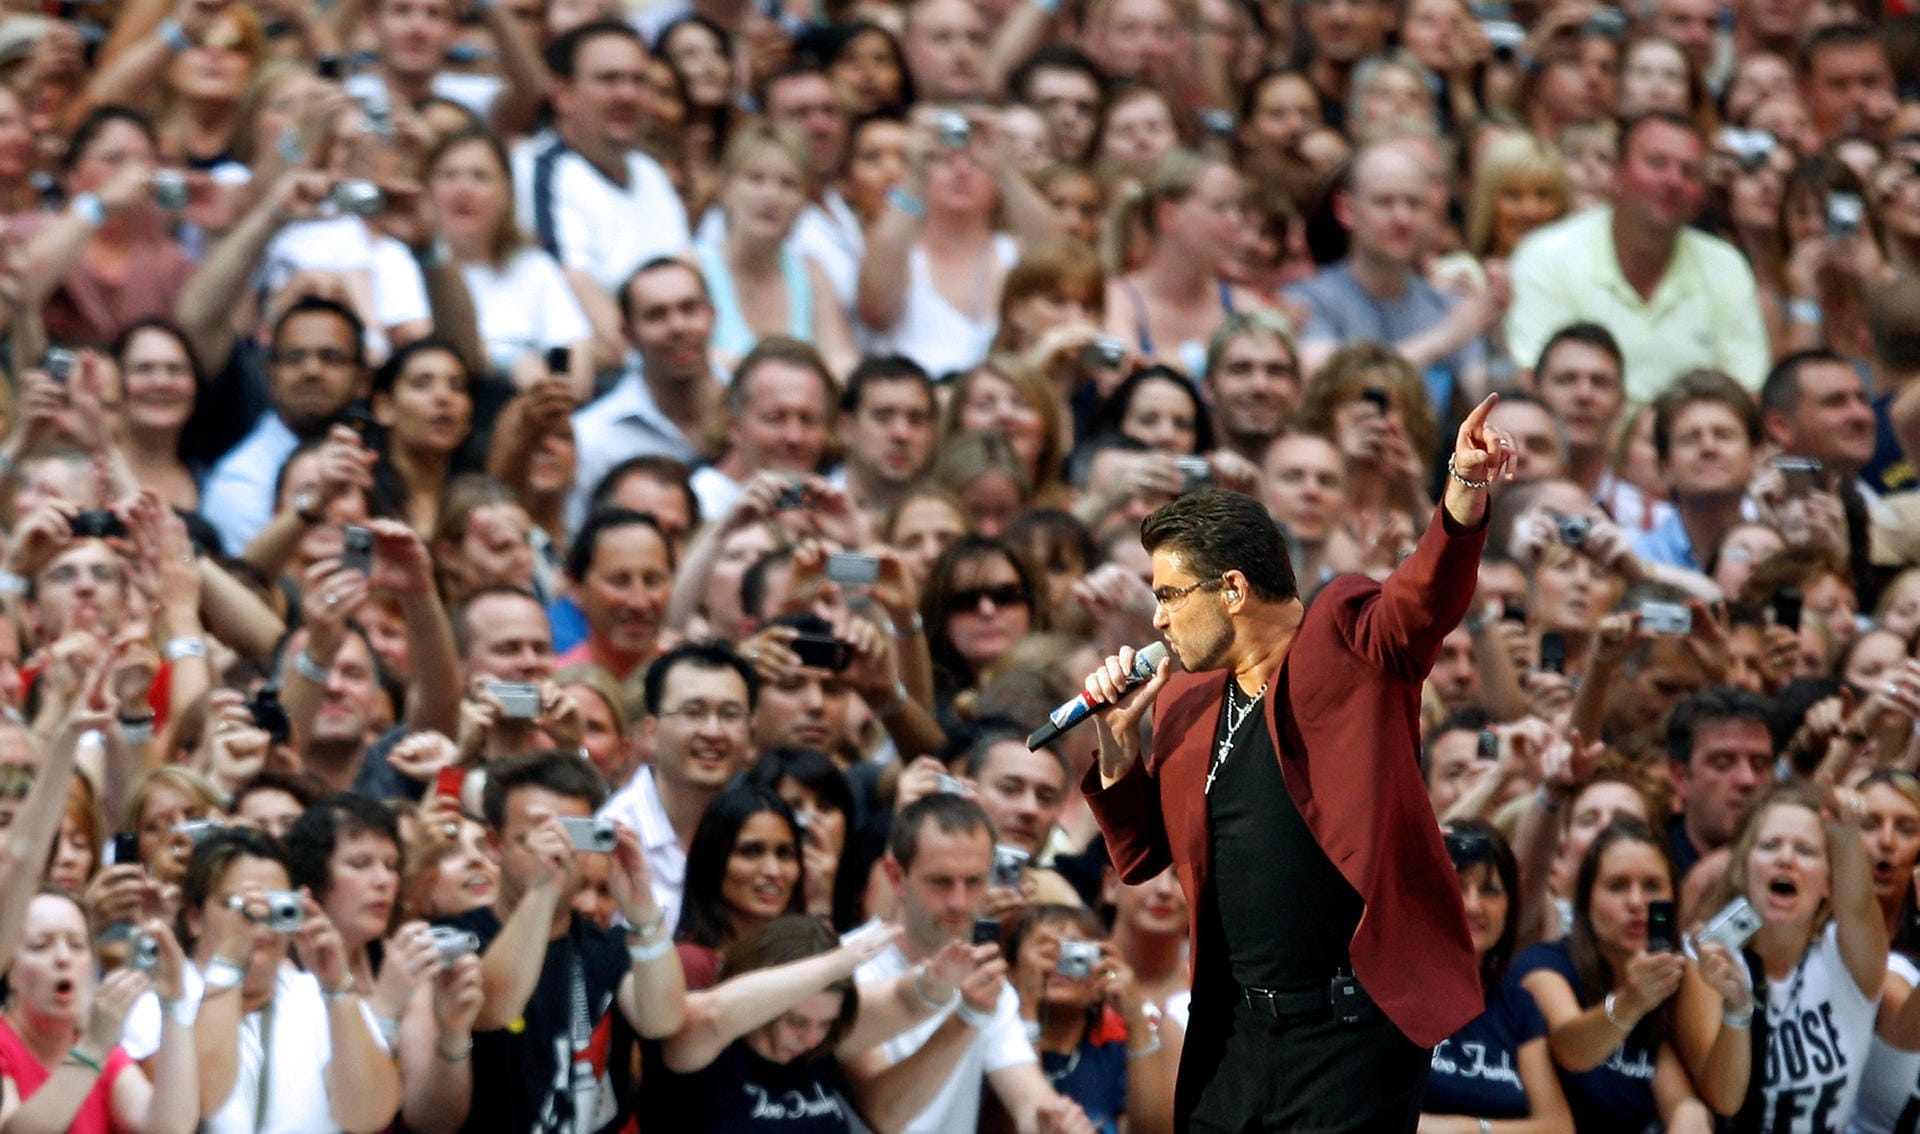 Konzertauftritt am 9. Juni 2007 in Londoner Wembley-Stadion.